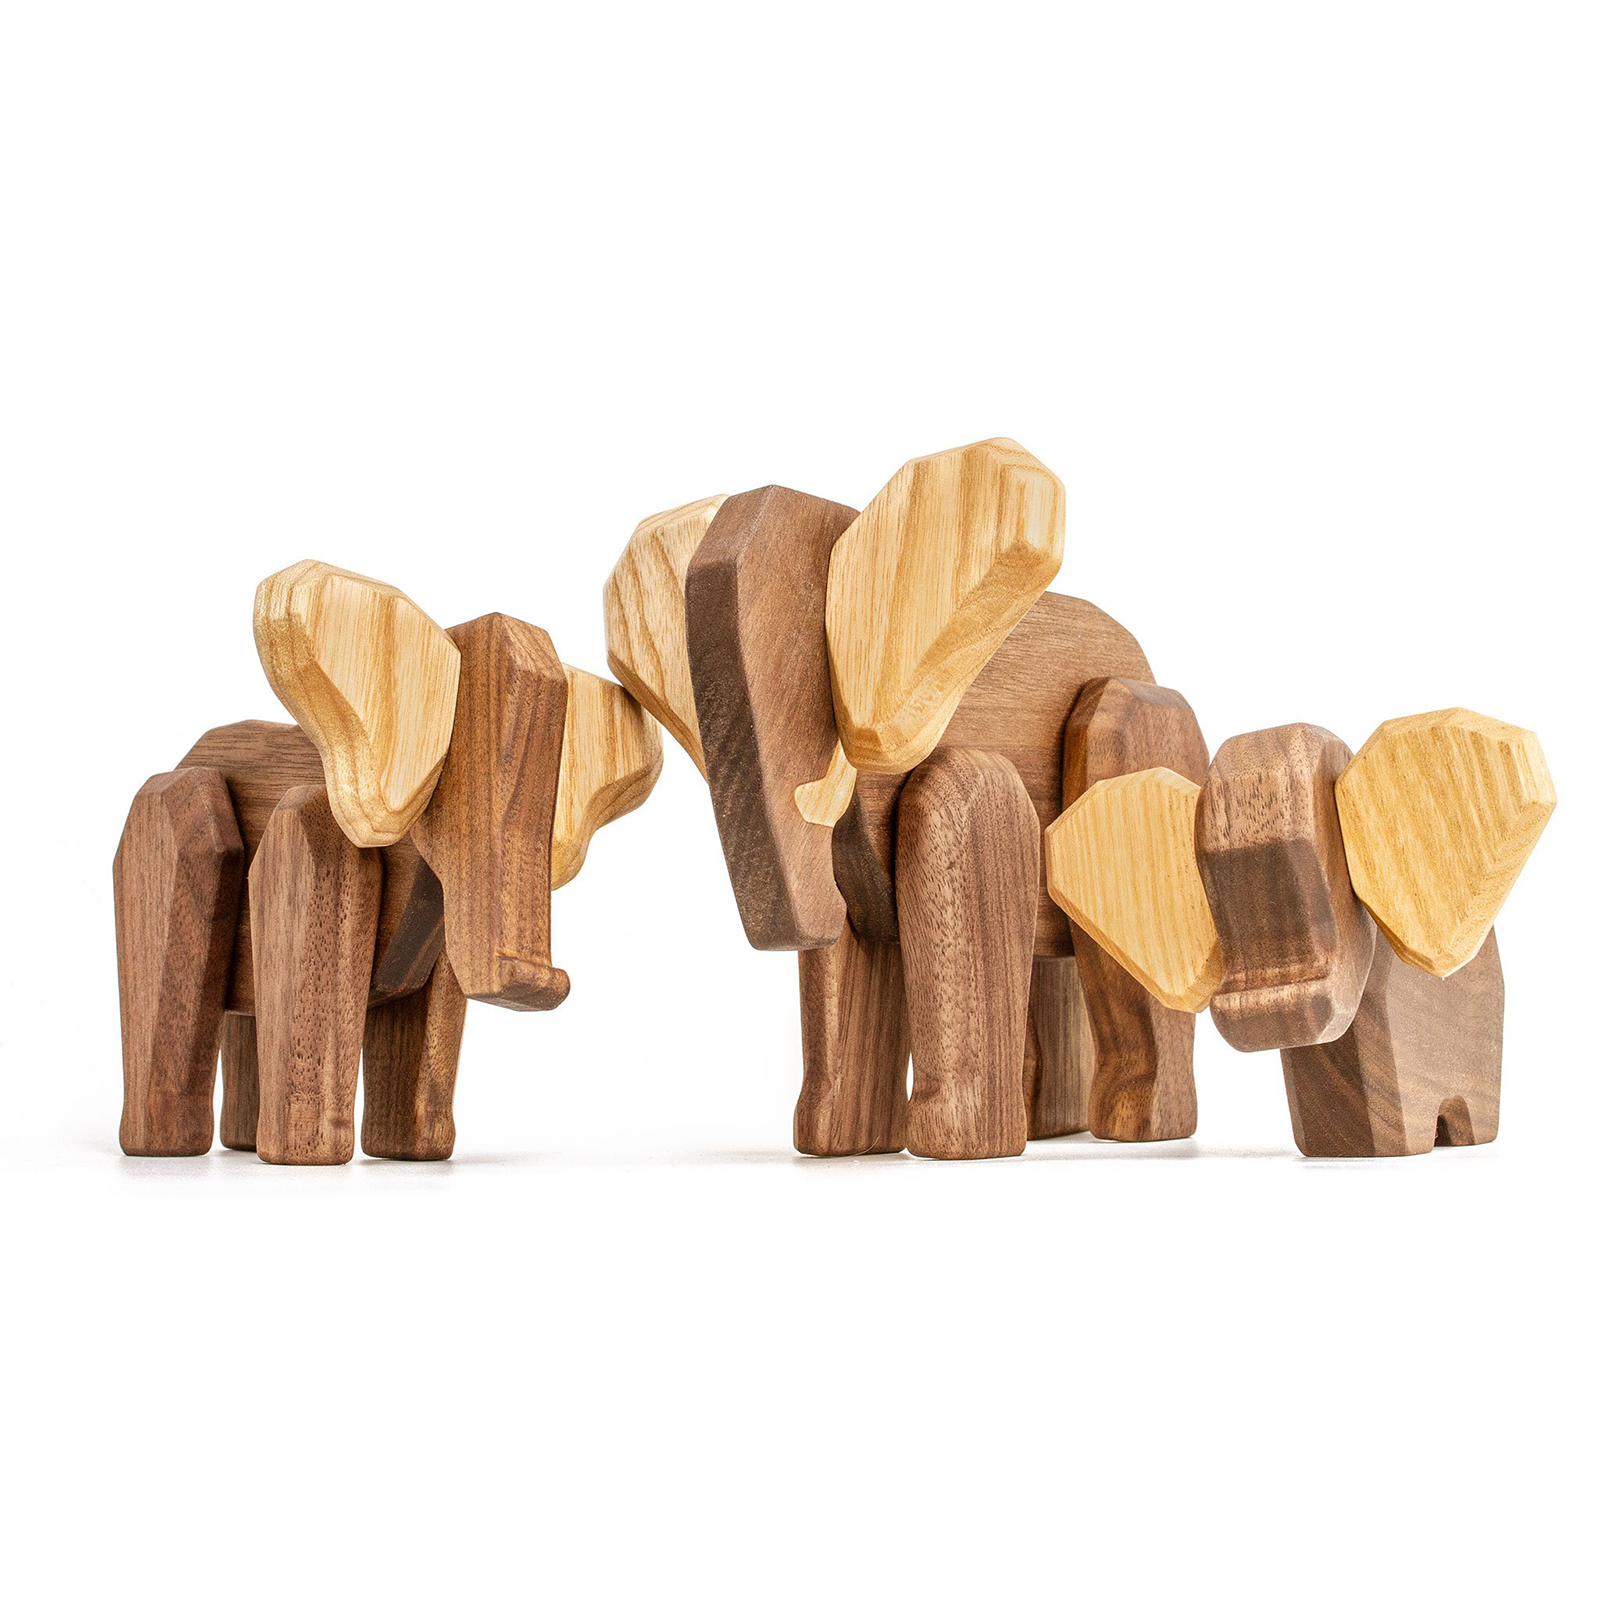 Elefant familie - Fablewood - dansk design - traefigurer - gaveide